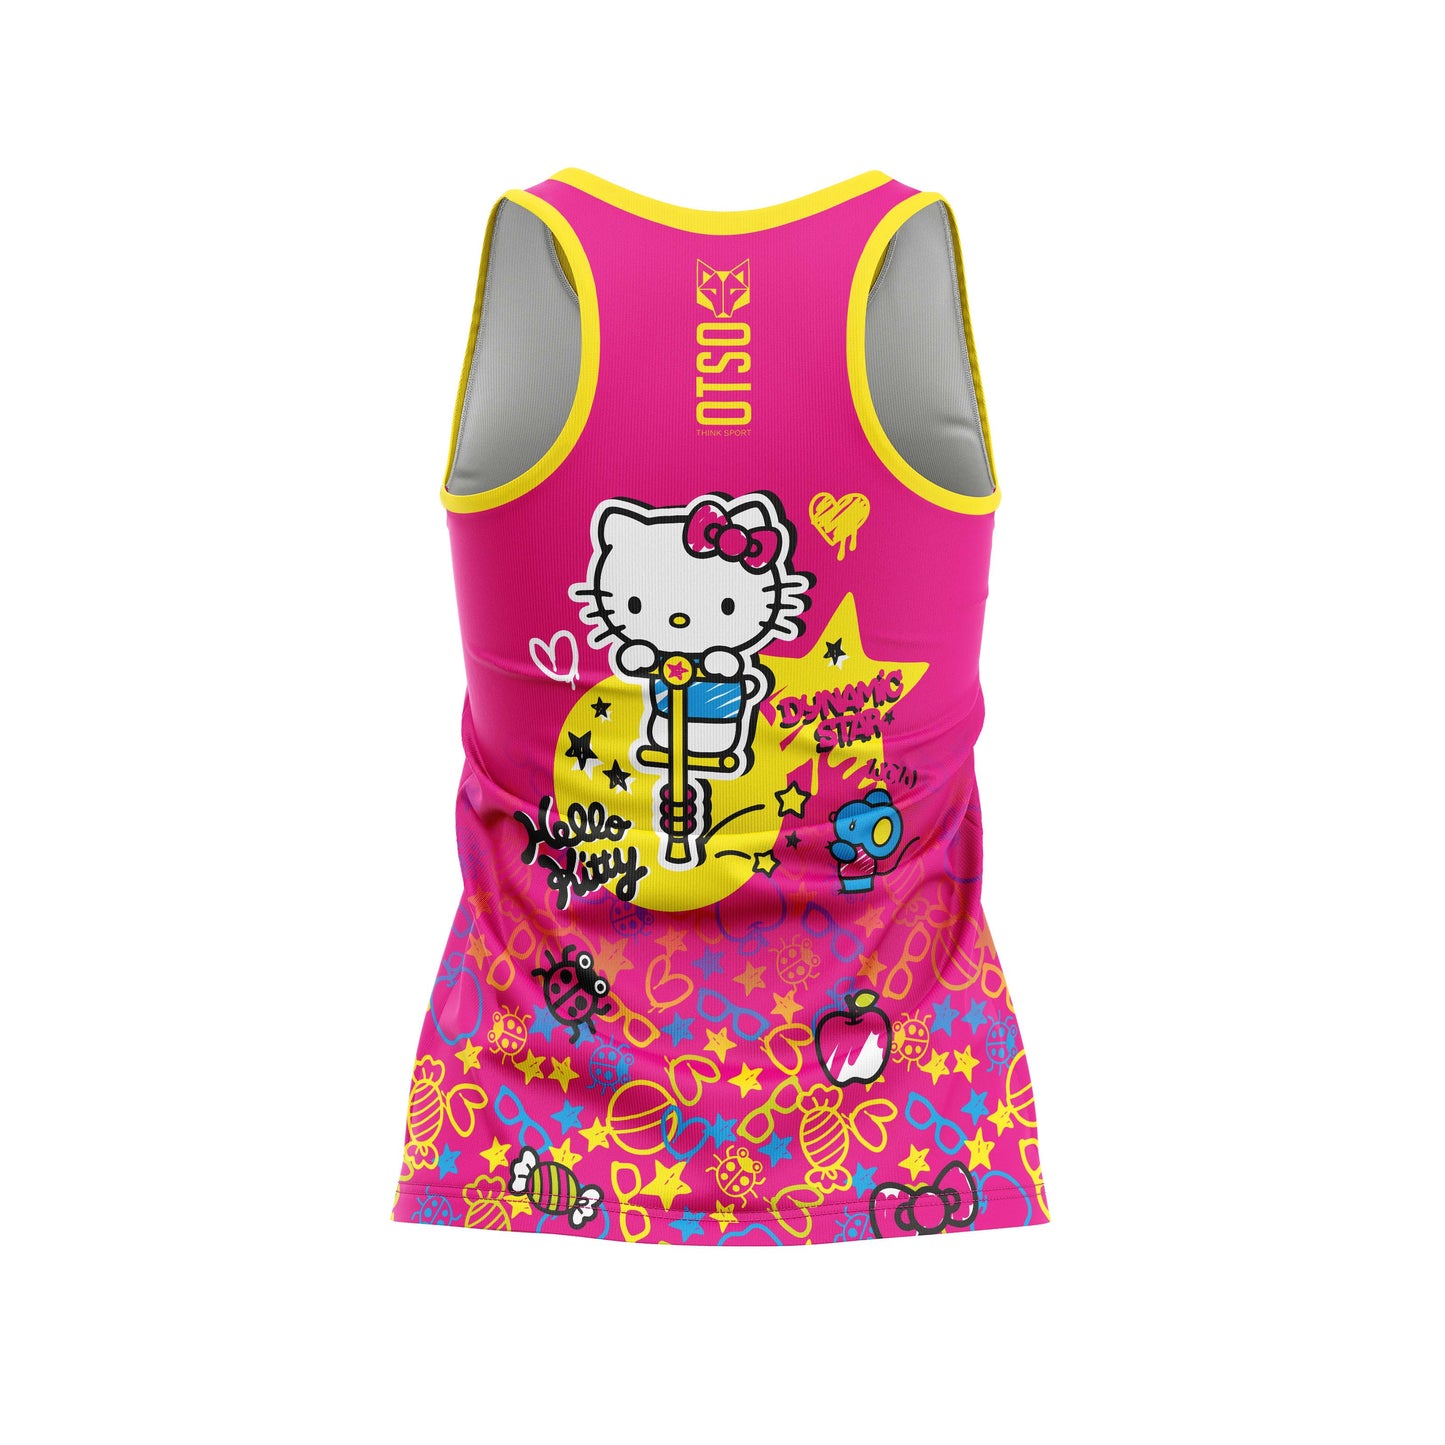 Camiseta sin mangas niña y mujer - Hello Kitty Sparkle